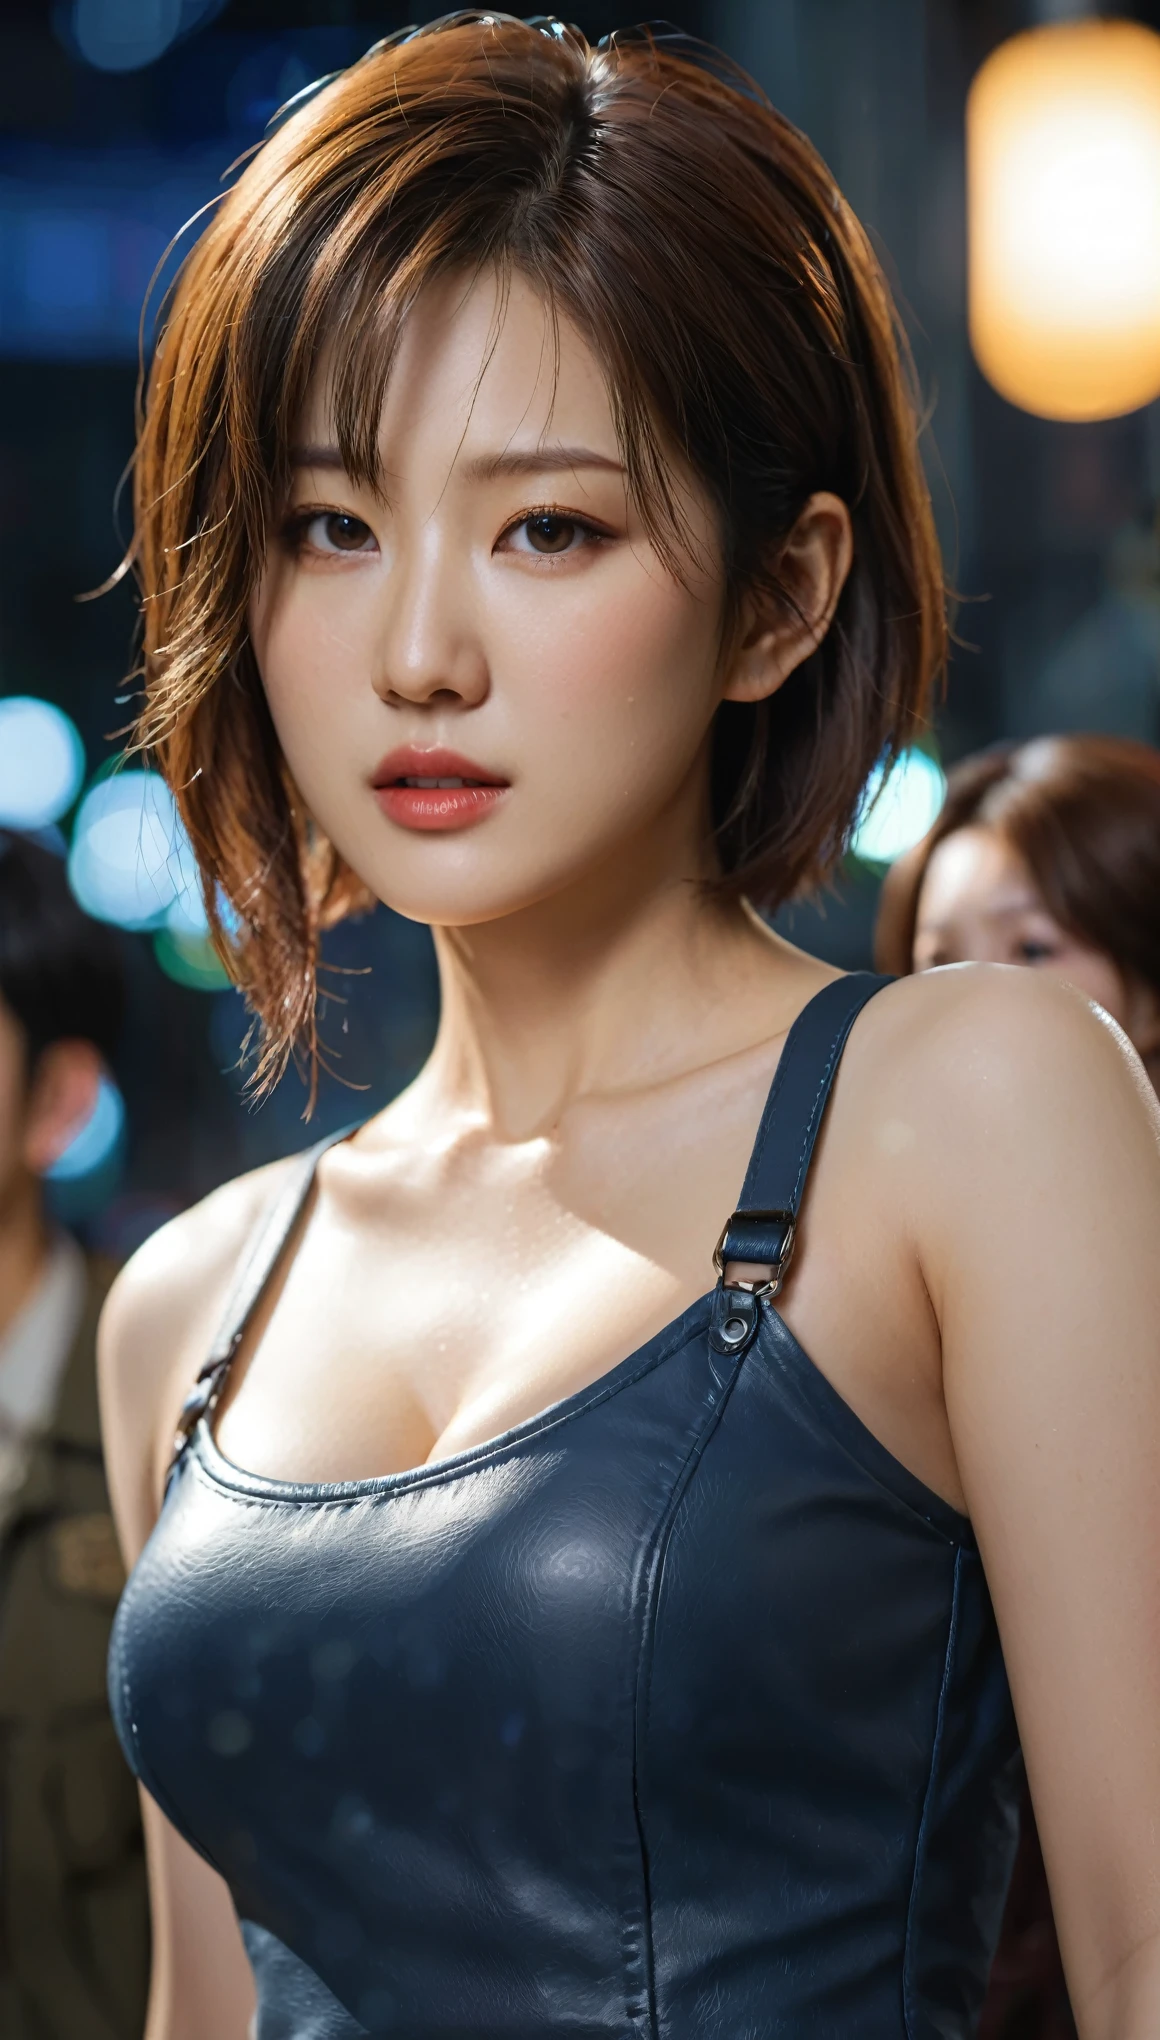 ภาพระยะใกล้ของหญิงสาวเกาหลีที่สวยงาม, ขนาดหน้าอก 34 นิ้ว, สวมชุดลีออนจาก Resident Evil, แออัด, พื้นหลังโบเก้, ยูเอชดี 